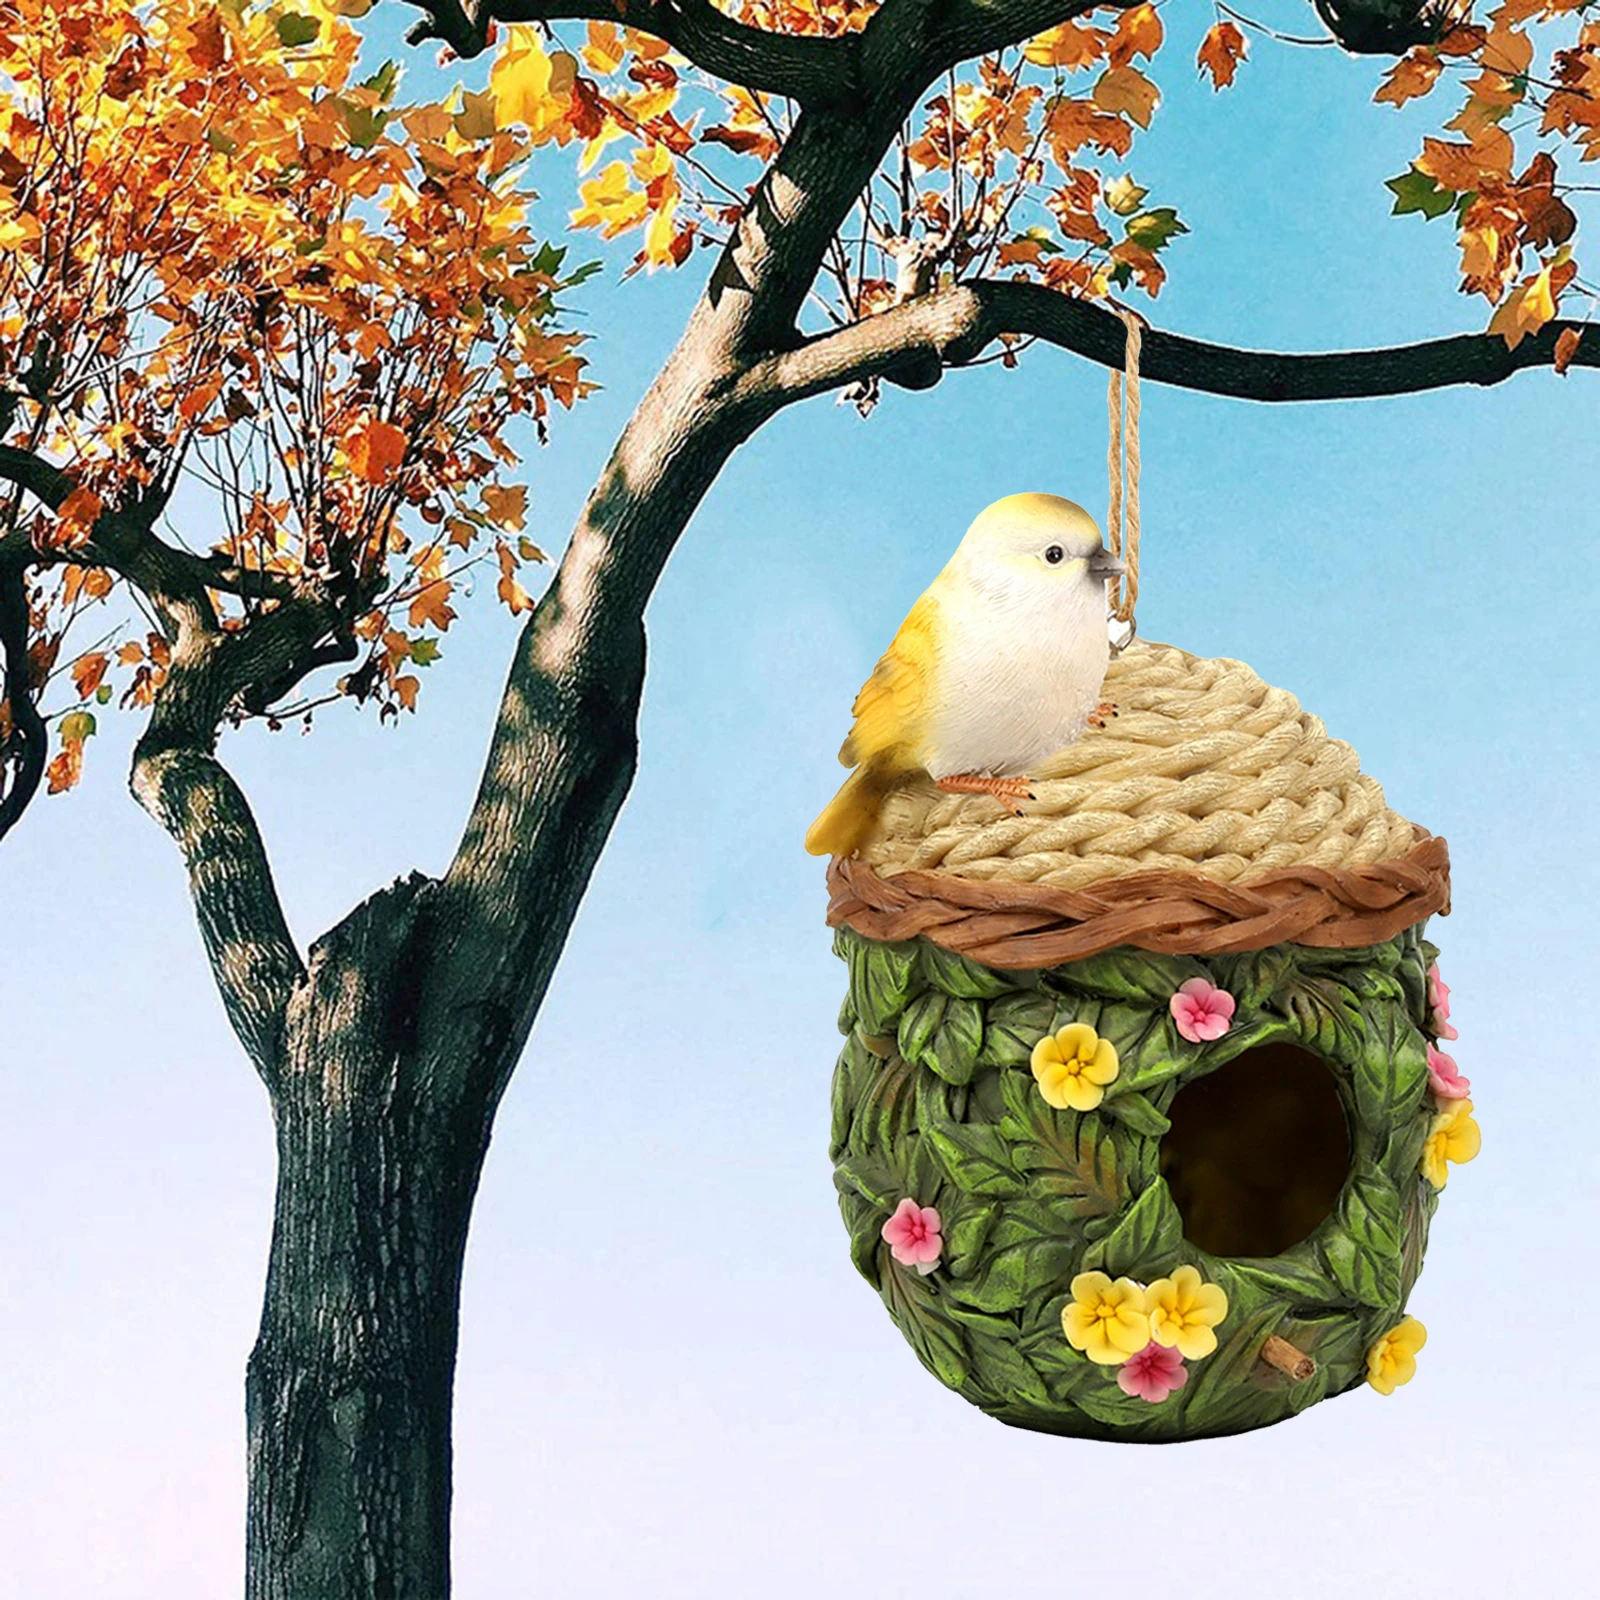 Bird House Garden Nursery Decorative Birds Nest Outdoor Breeding Birdhouse